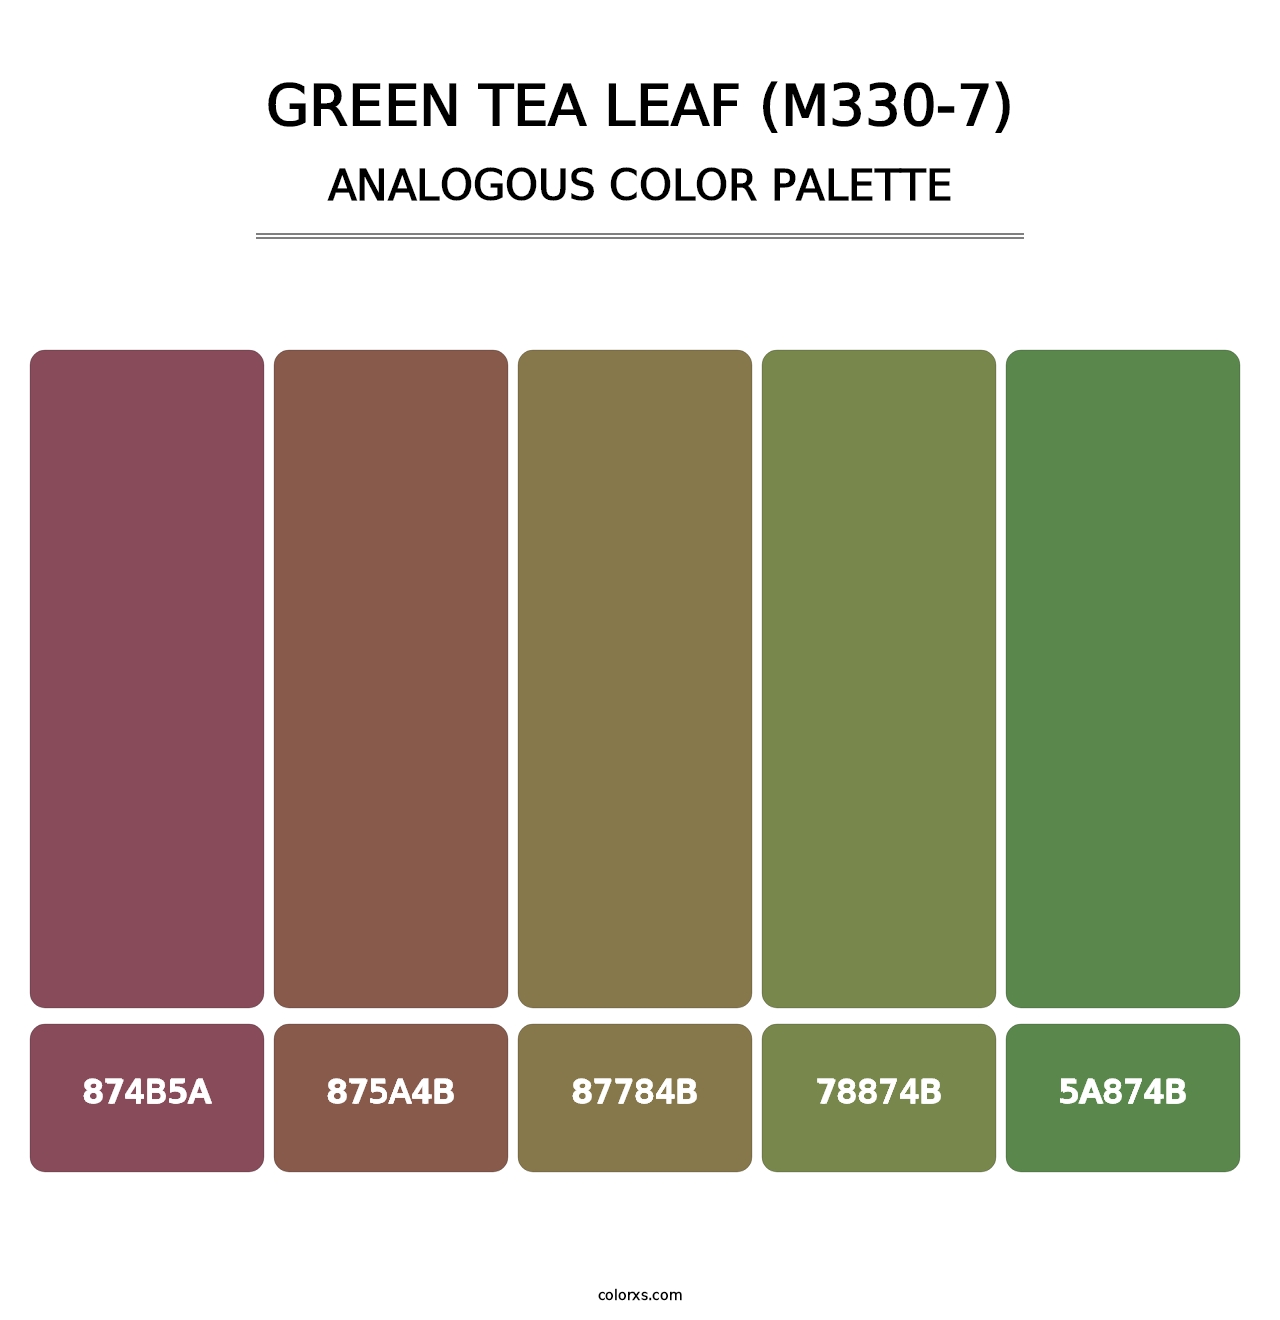 Green Tea Leaf (M330-7) - Analogous Color Palette